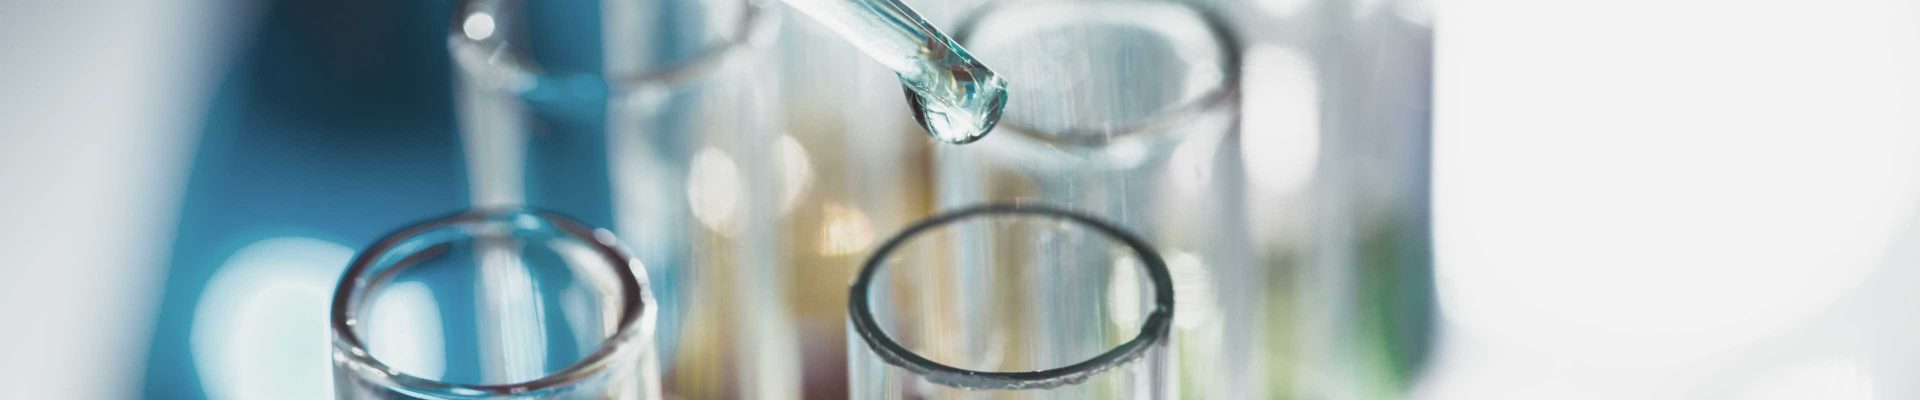 Trinkwasser wird täglich im Labor auf seine Qualität geprüft